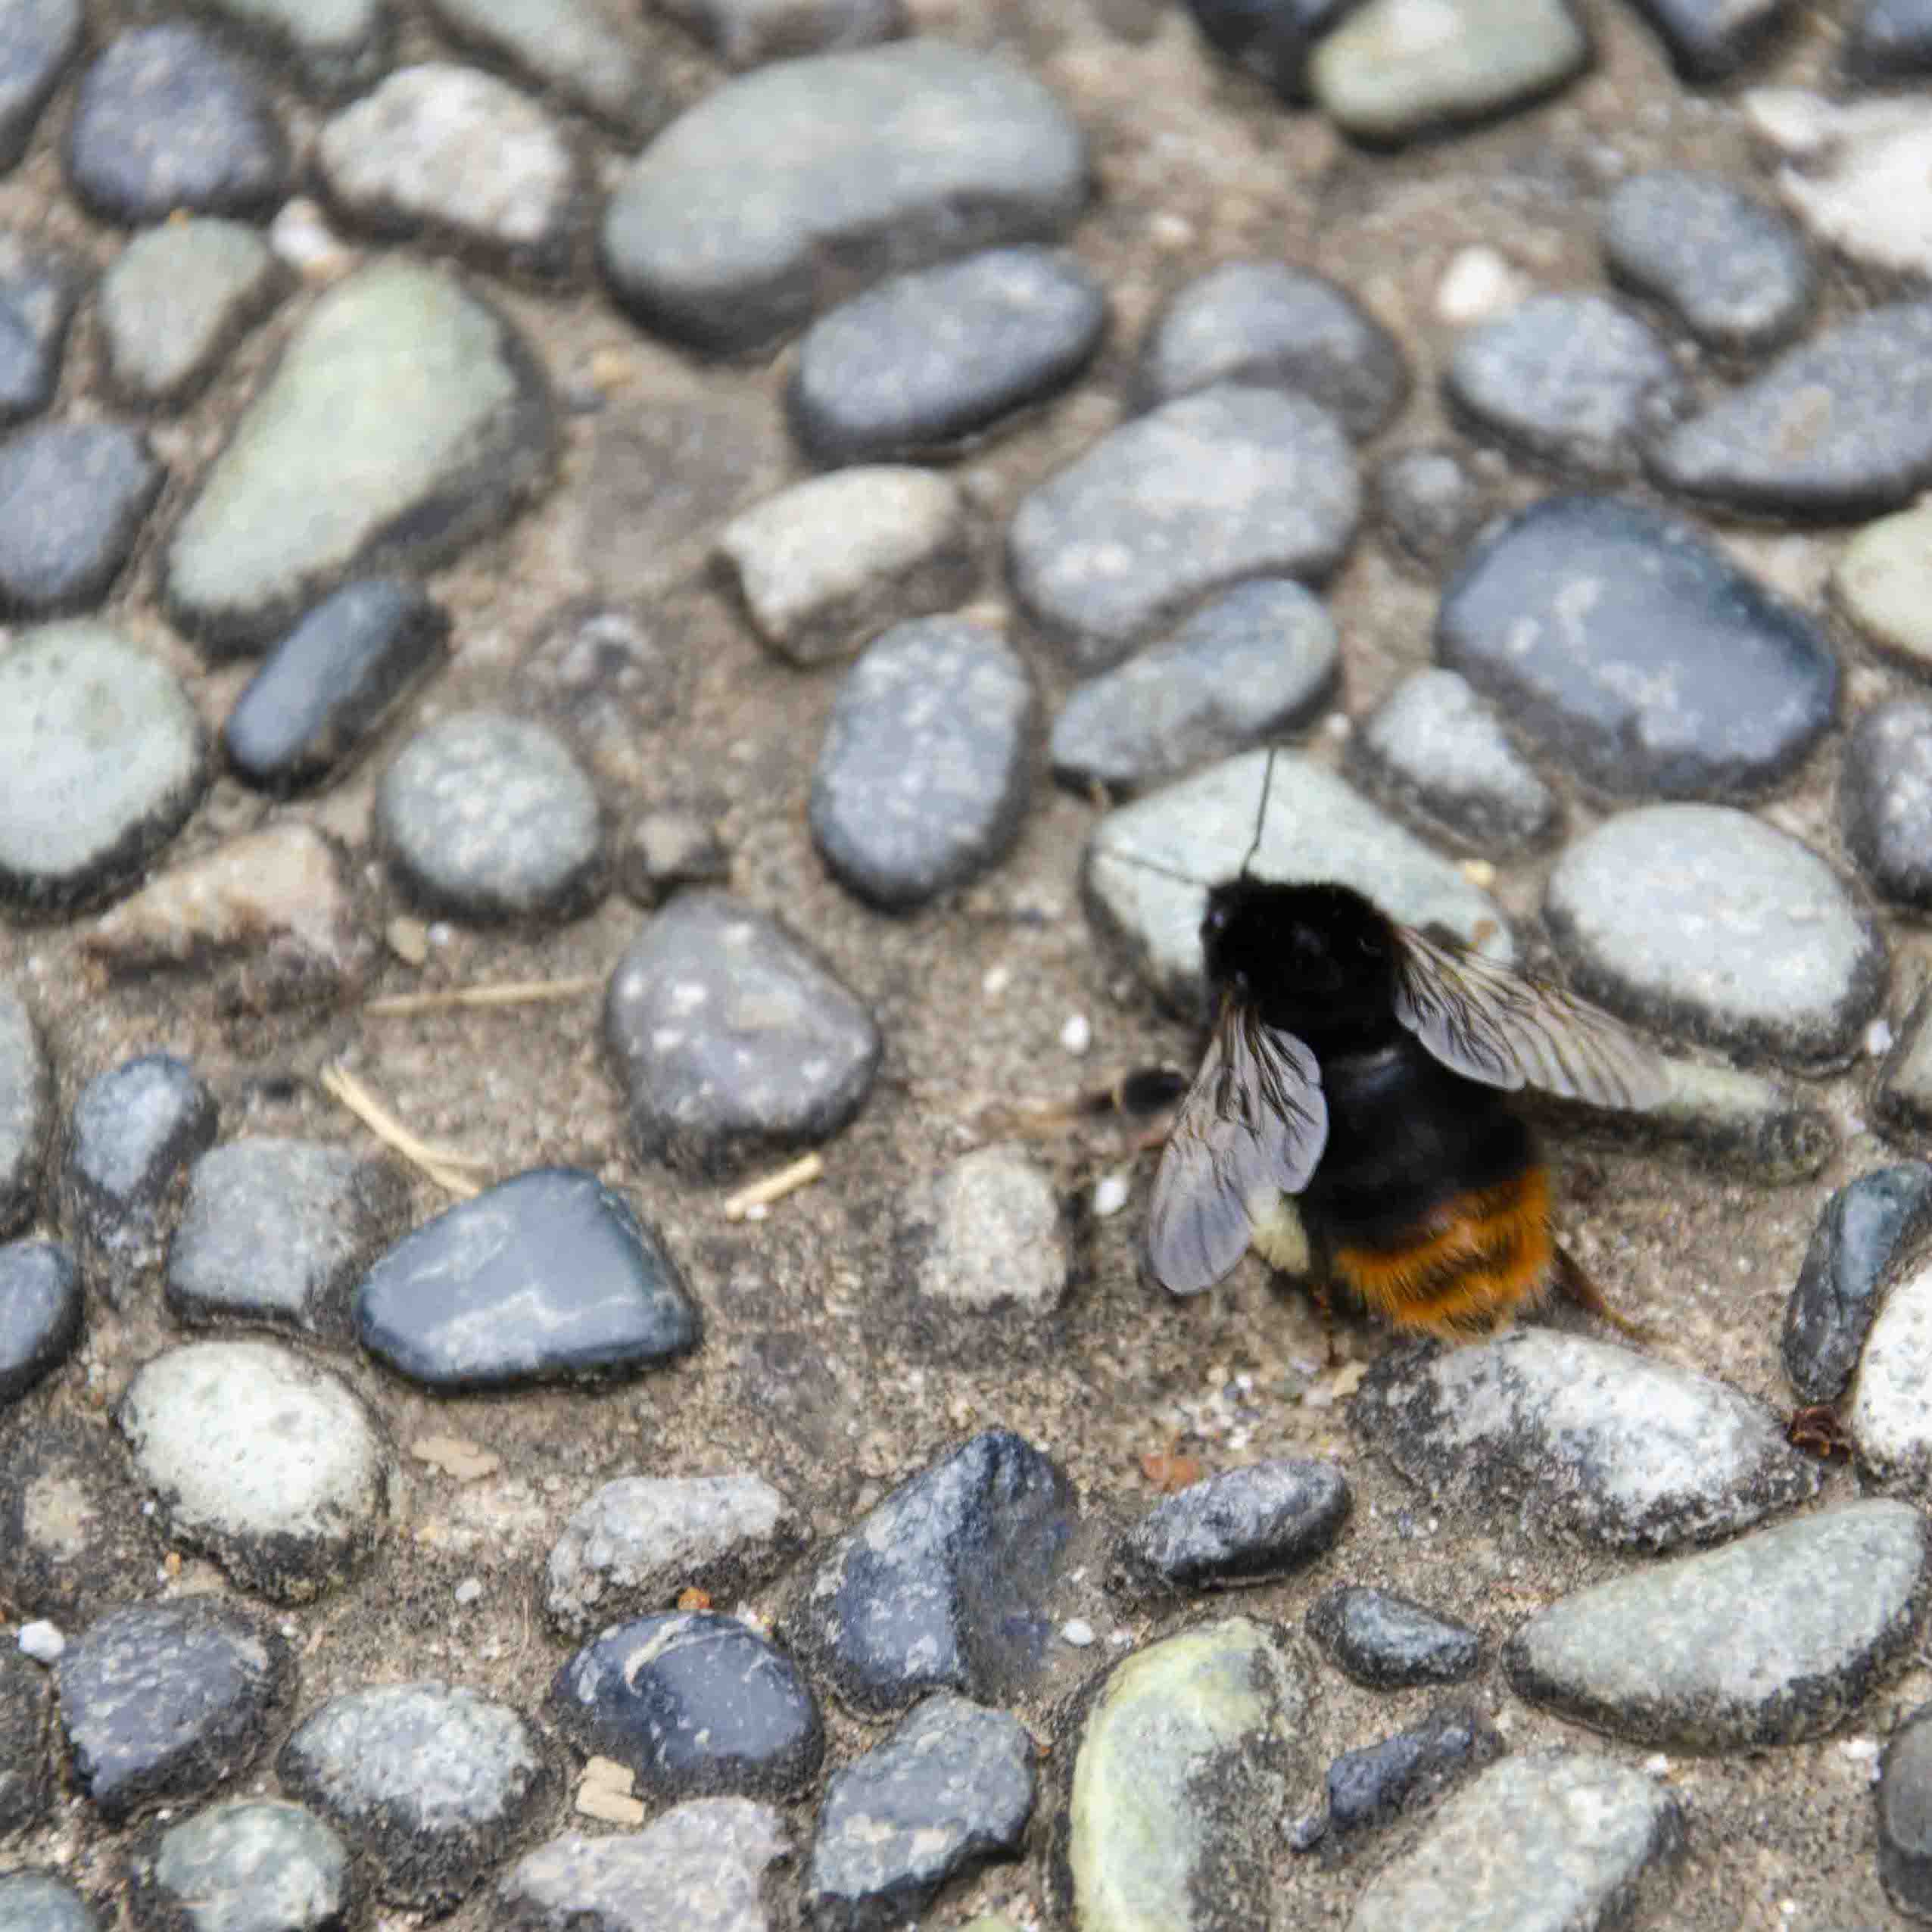 Bumblebee on cobblestone